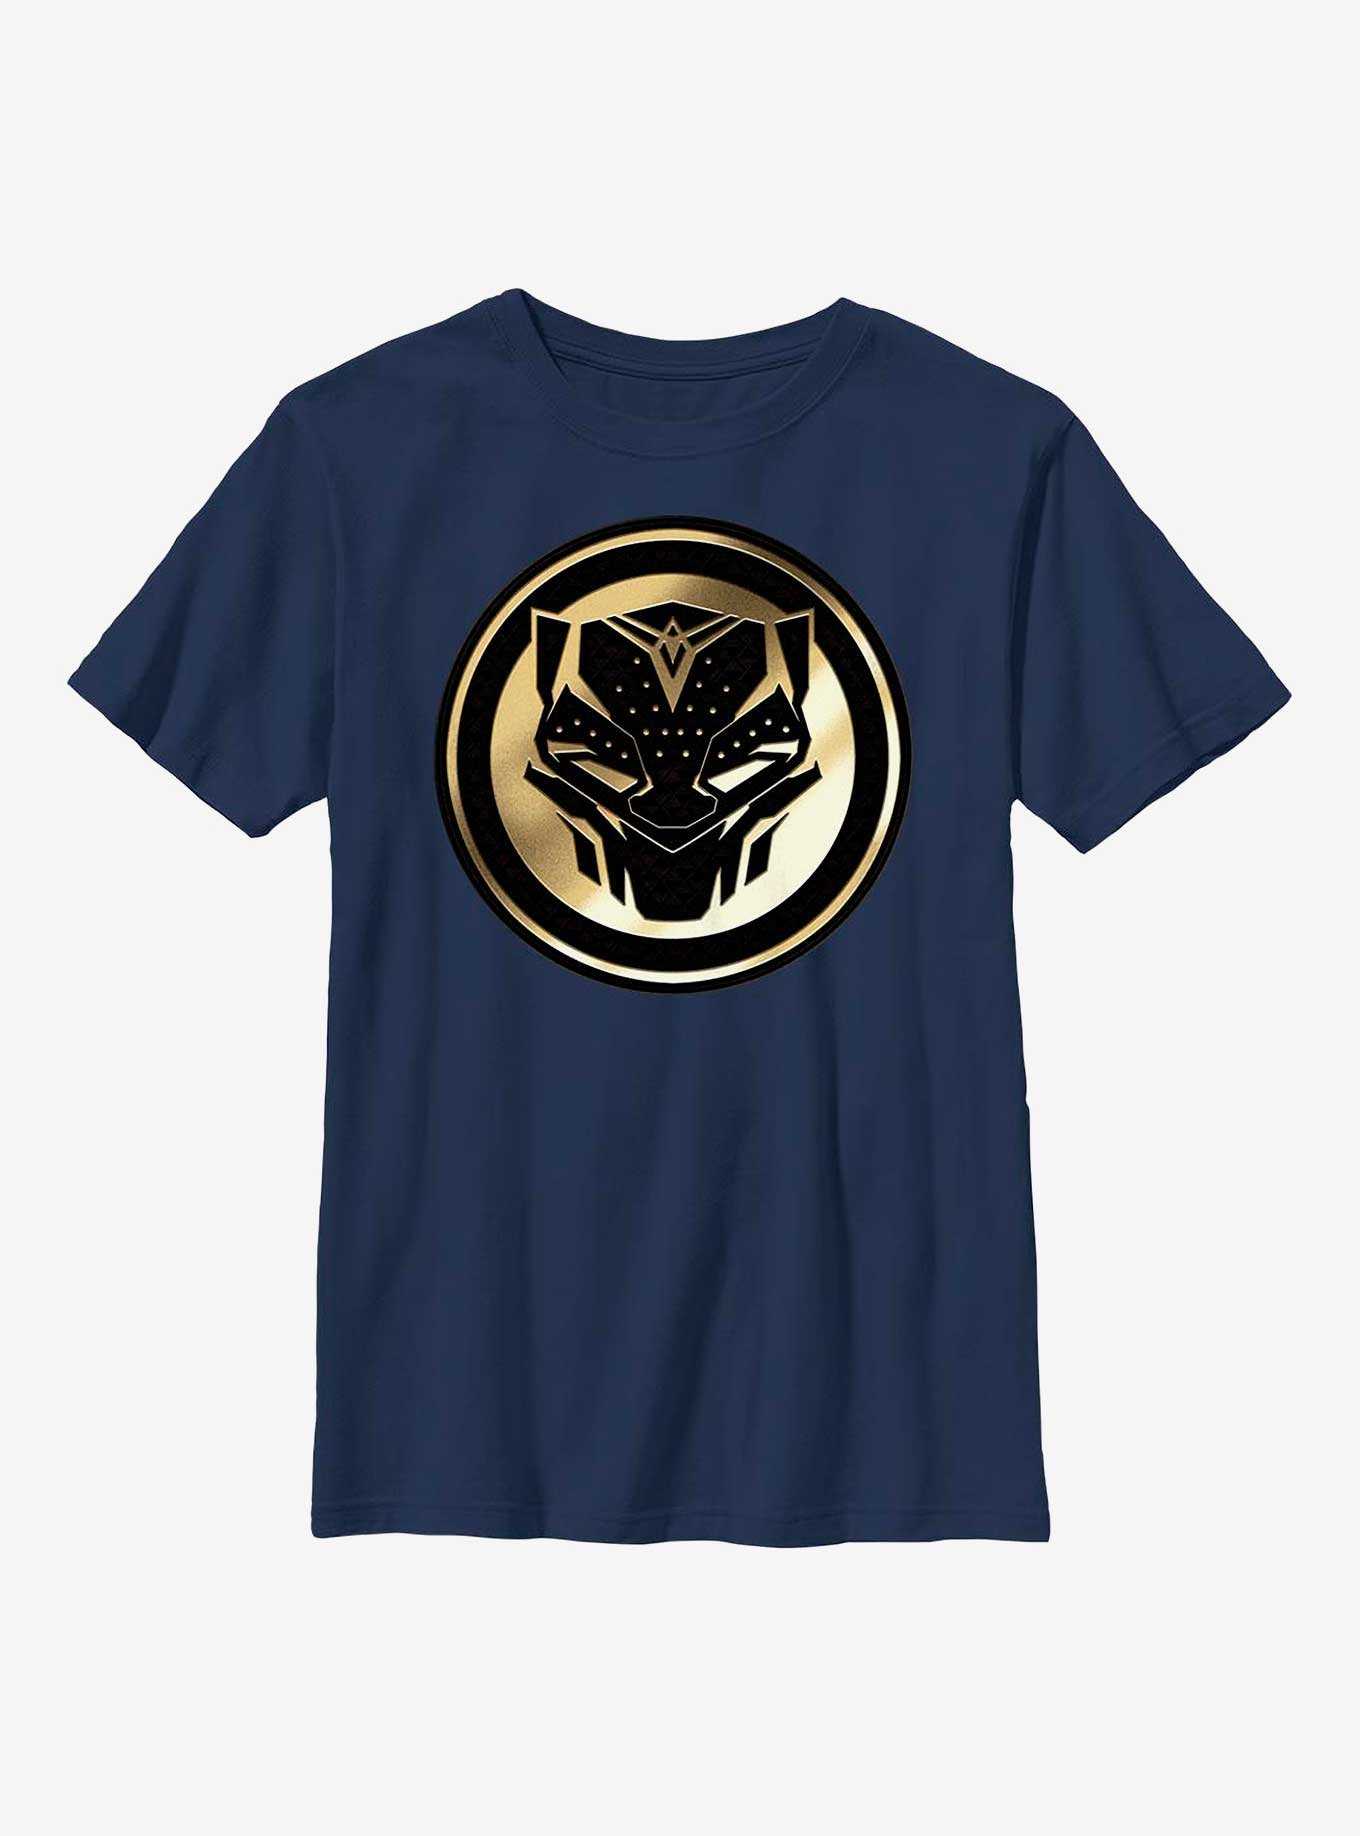 Marvel Black Panther: Wakanda Forever Golden Emblem Youth T-Shirt, , hi-res